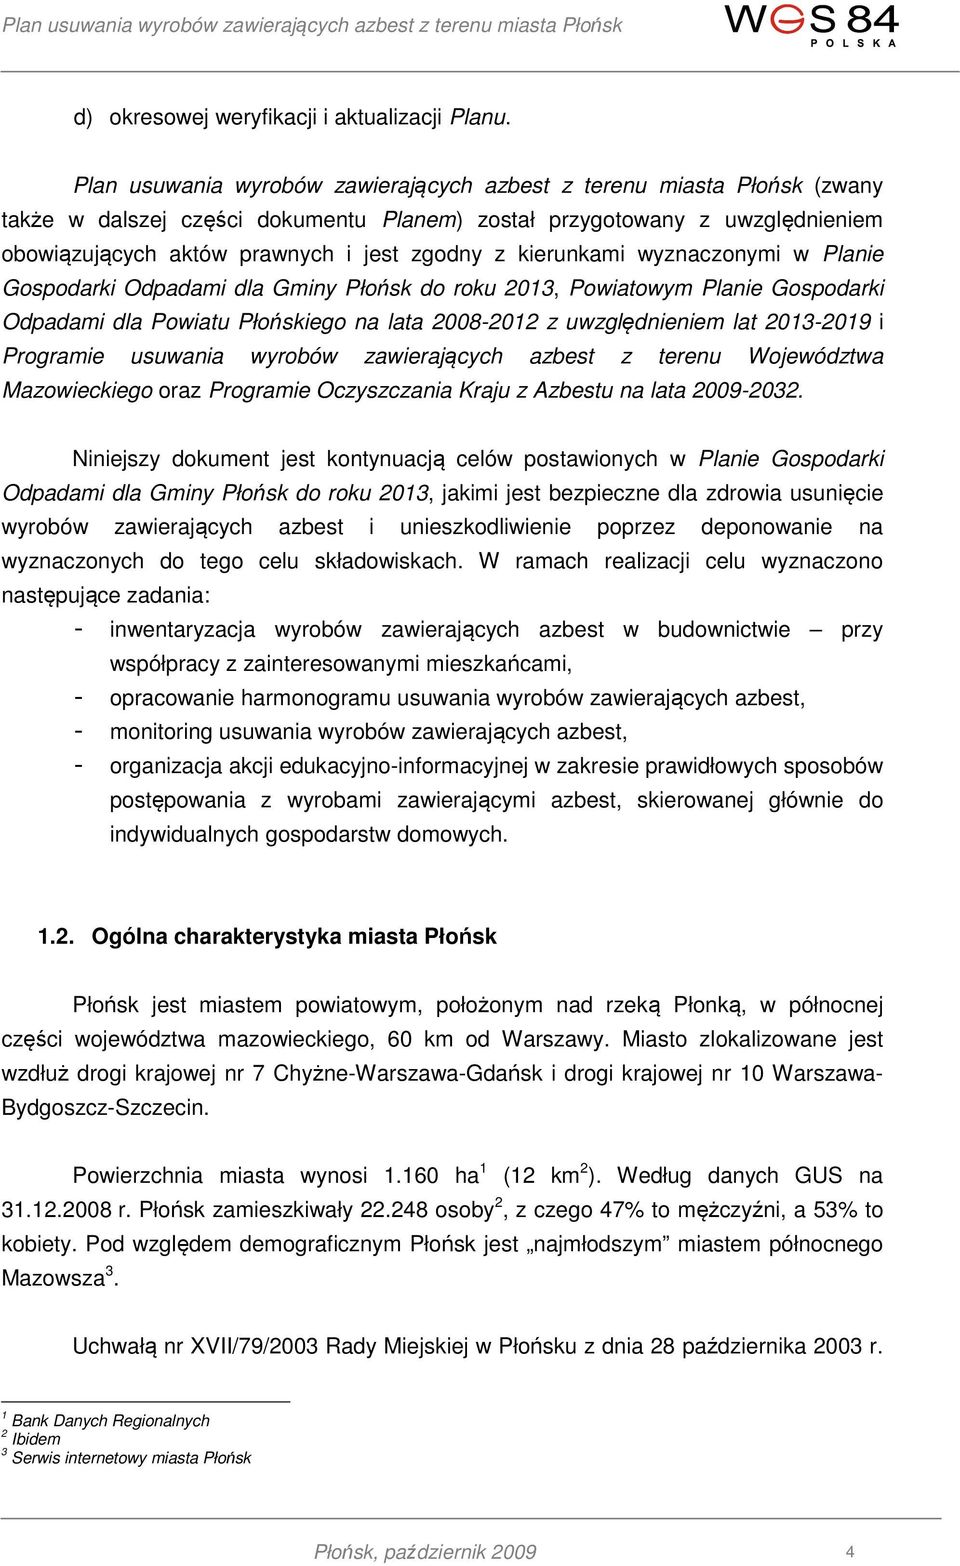 kierunkami wyznaczonymi w Planie Gospodarki Odpadami dla Gminy Płońsk do roku 2013, Powiatowym Planie Gospodarki Odpadami dla Powiatu Płońskiego na lata 2008-2012 z uwzględnieniem lat 2013-2019 i